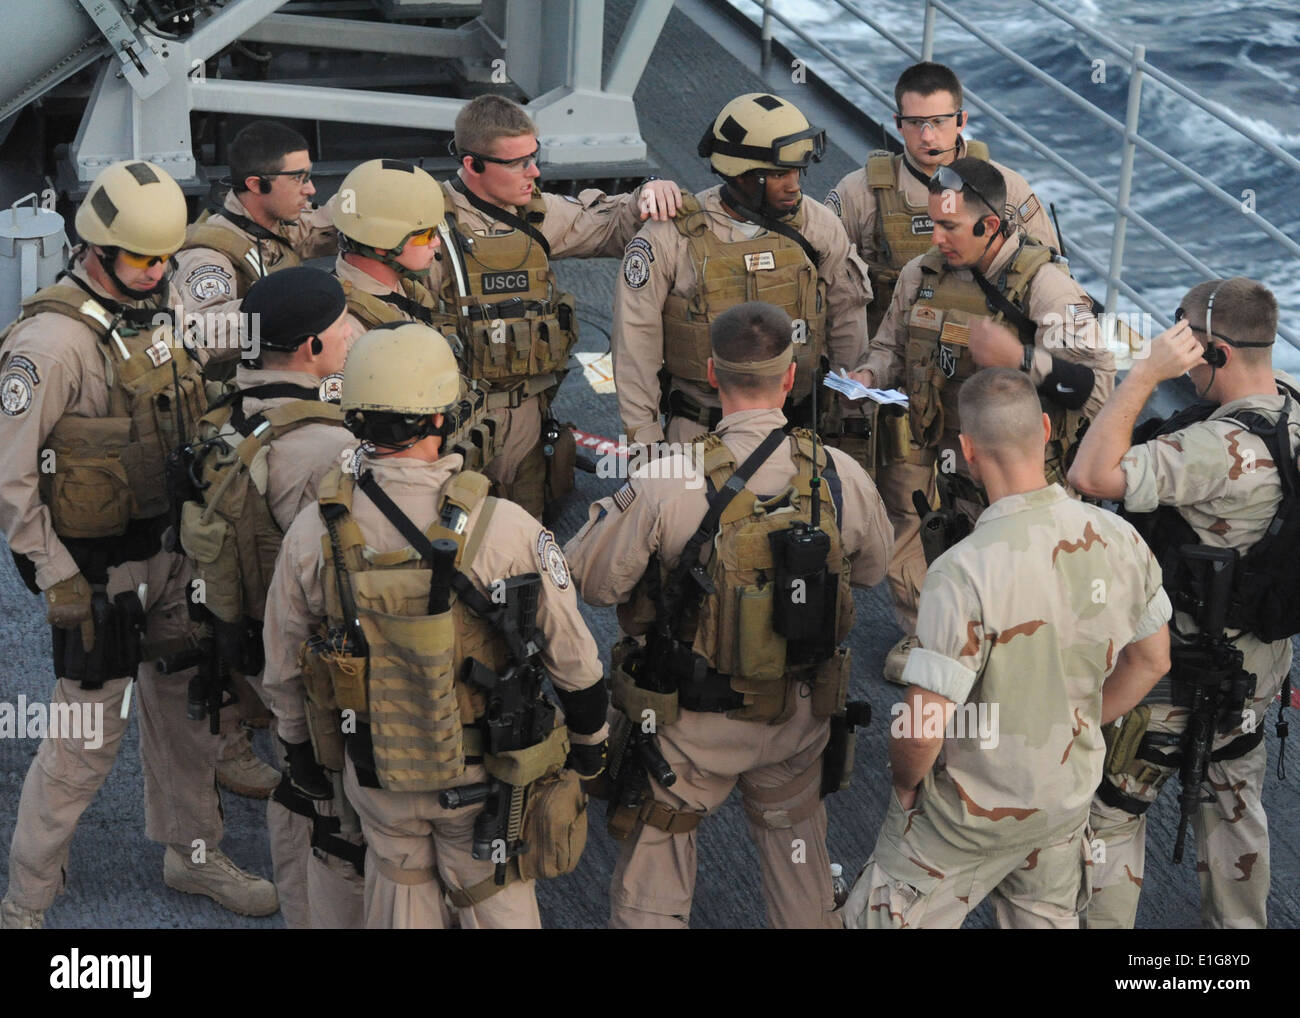 Los marineros de EE.UU. asignados a una visita, junta, búsqueda e incautación de equipo y Guardacostas asignado a la Guardia Costera Ley Enforcemen Foto de stock